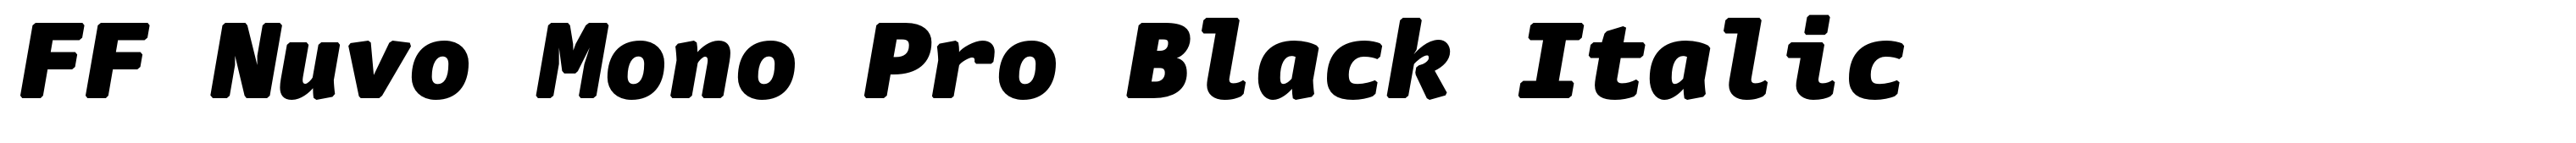 FF Nuvo Mono Pro Black Italic